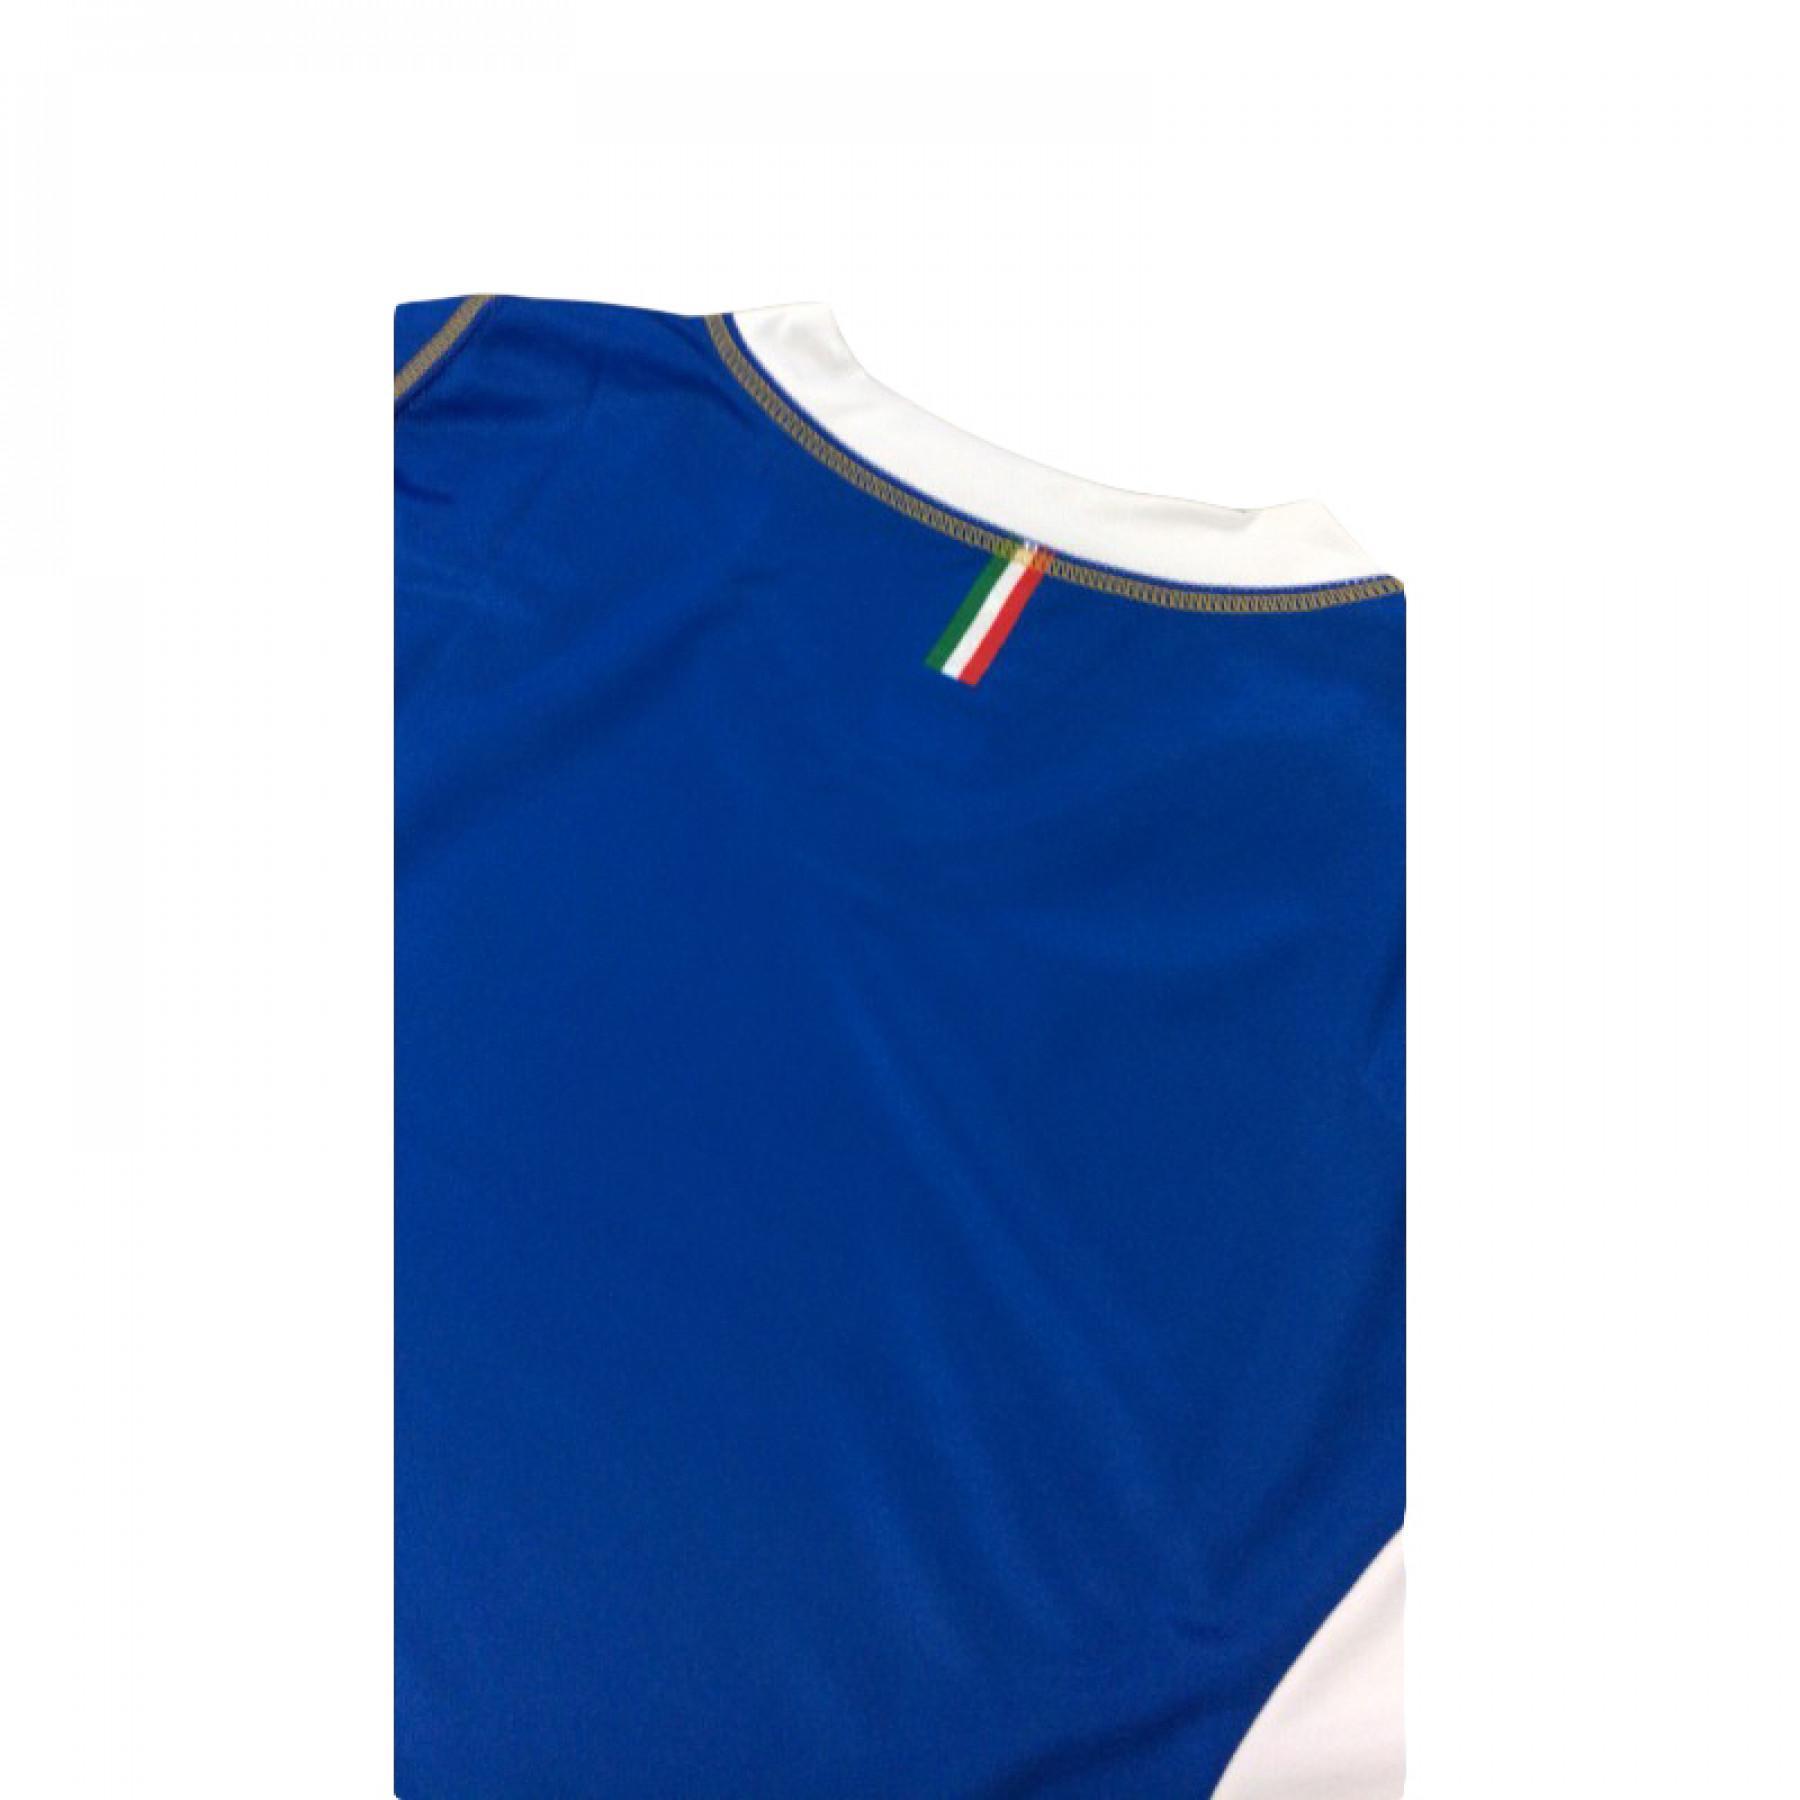 Camiseta replica Italie Volley 2018/2019